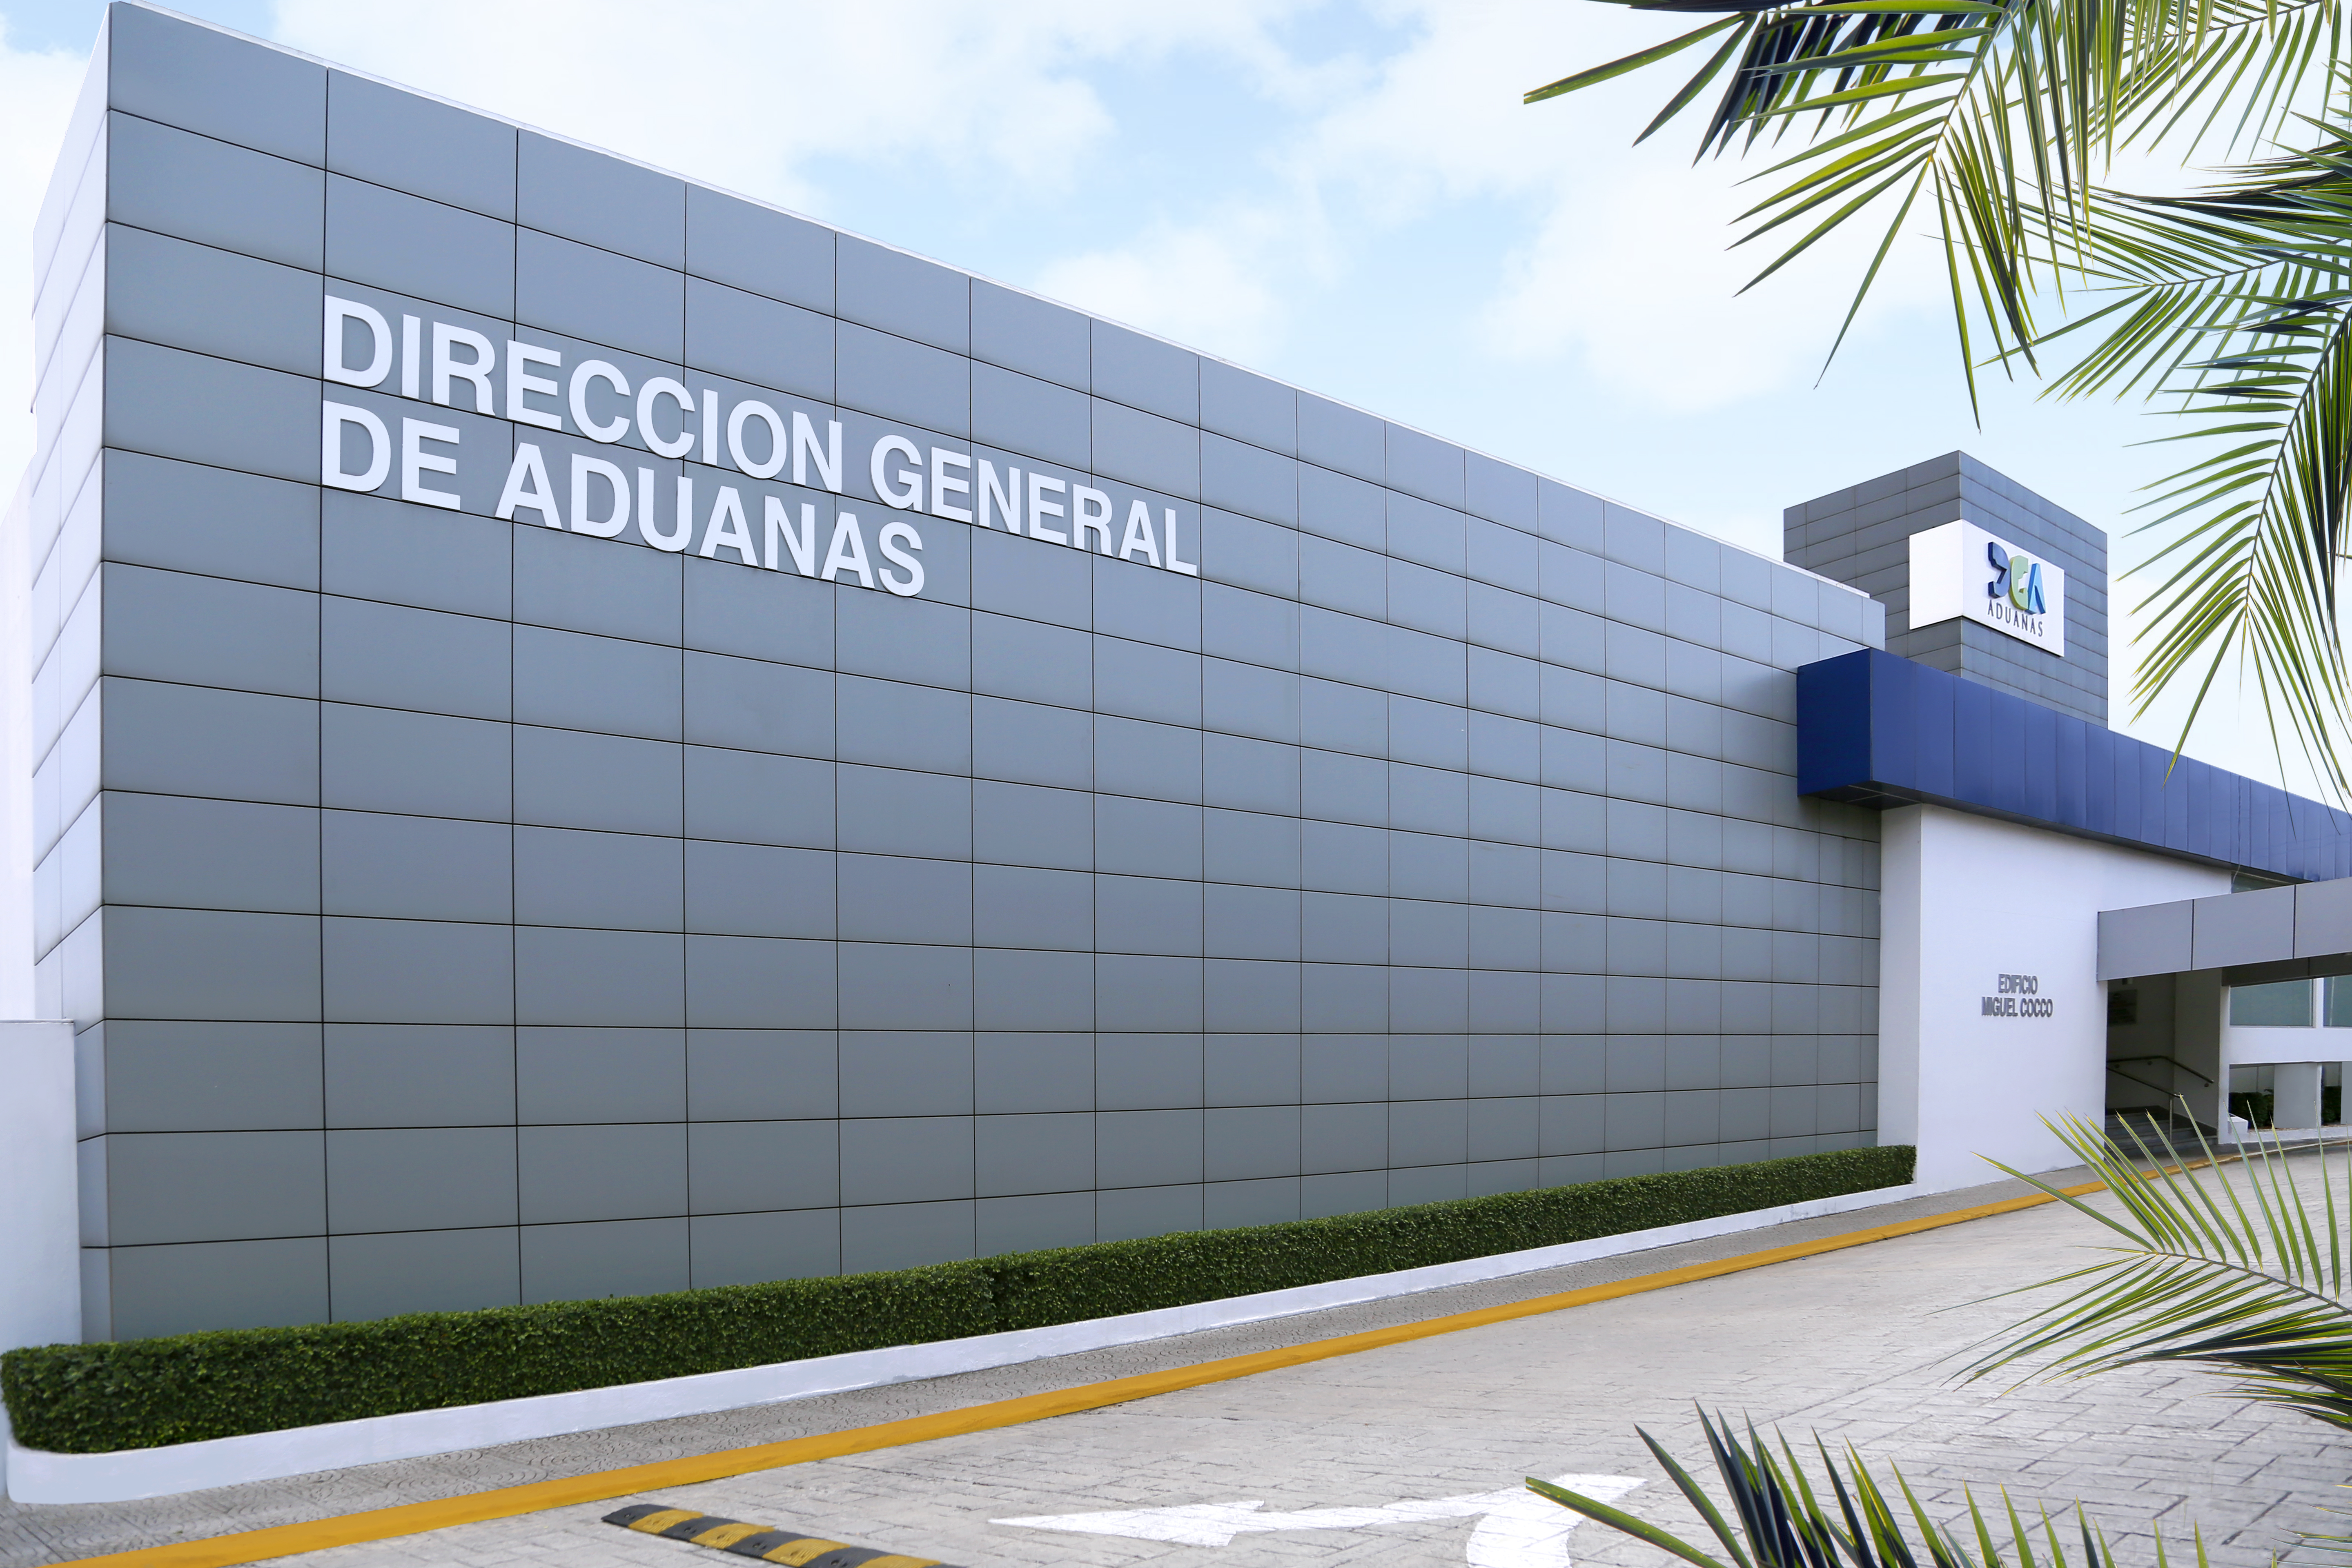 REPÚBLICA DOMINICANA: A una semana de su instalación, tecnología de Rayos X en el muelle de Puerto Plata localiza carga de municiones